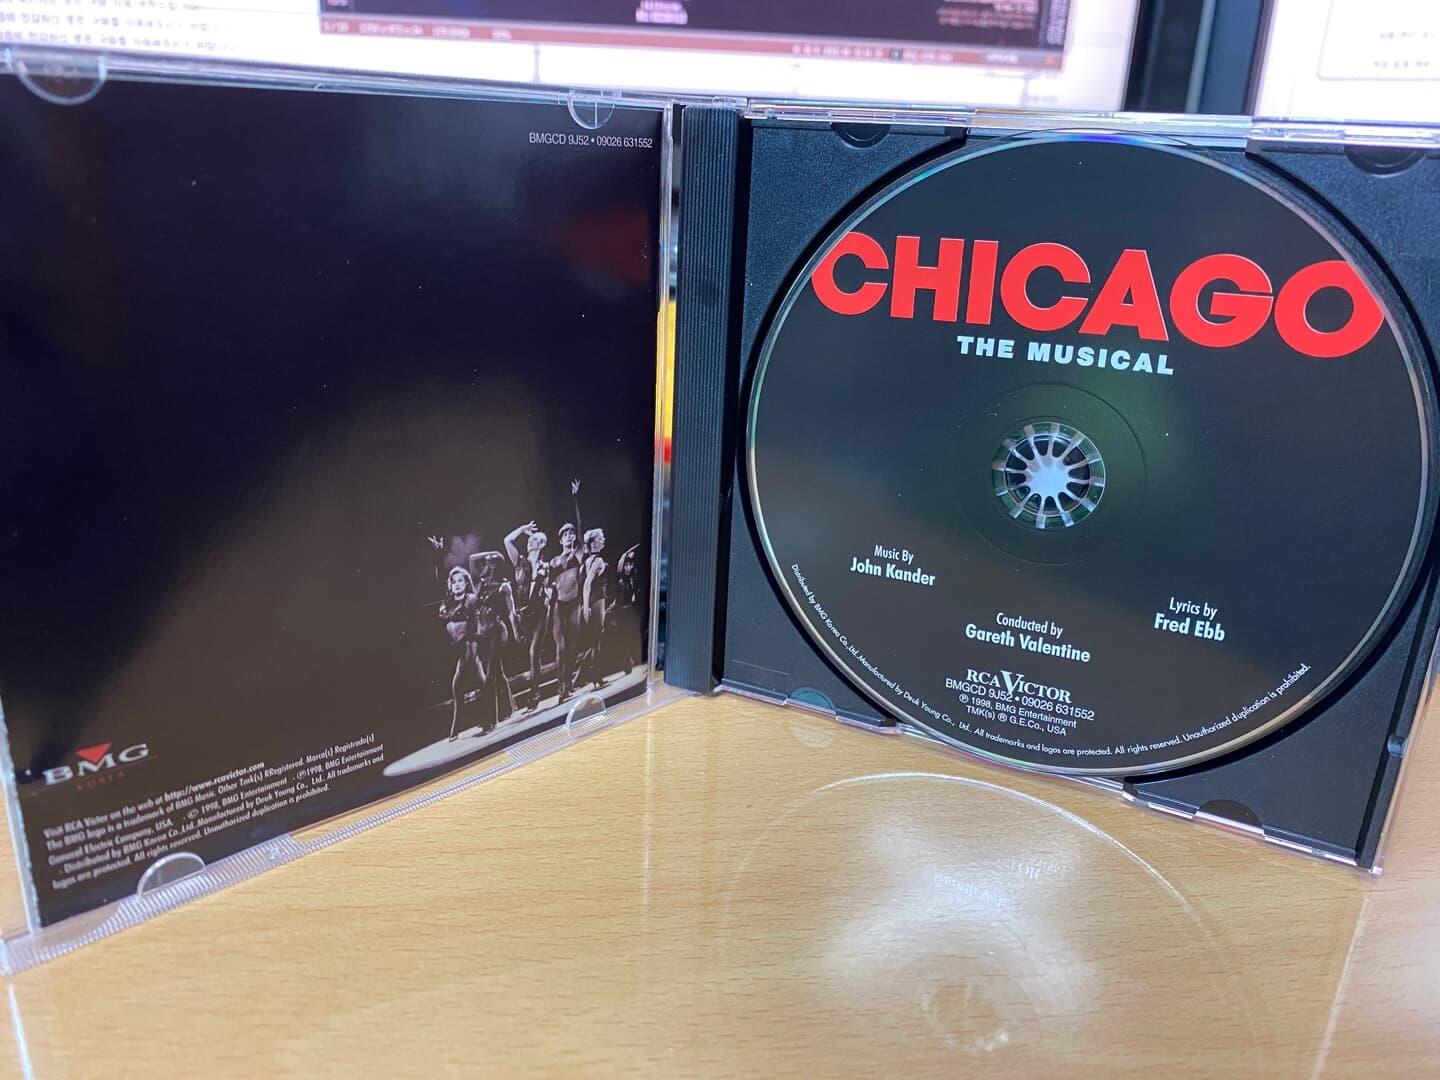 뮤지컬 시카고 - The Musical CHICAGO The London Cast Recording OST